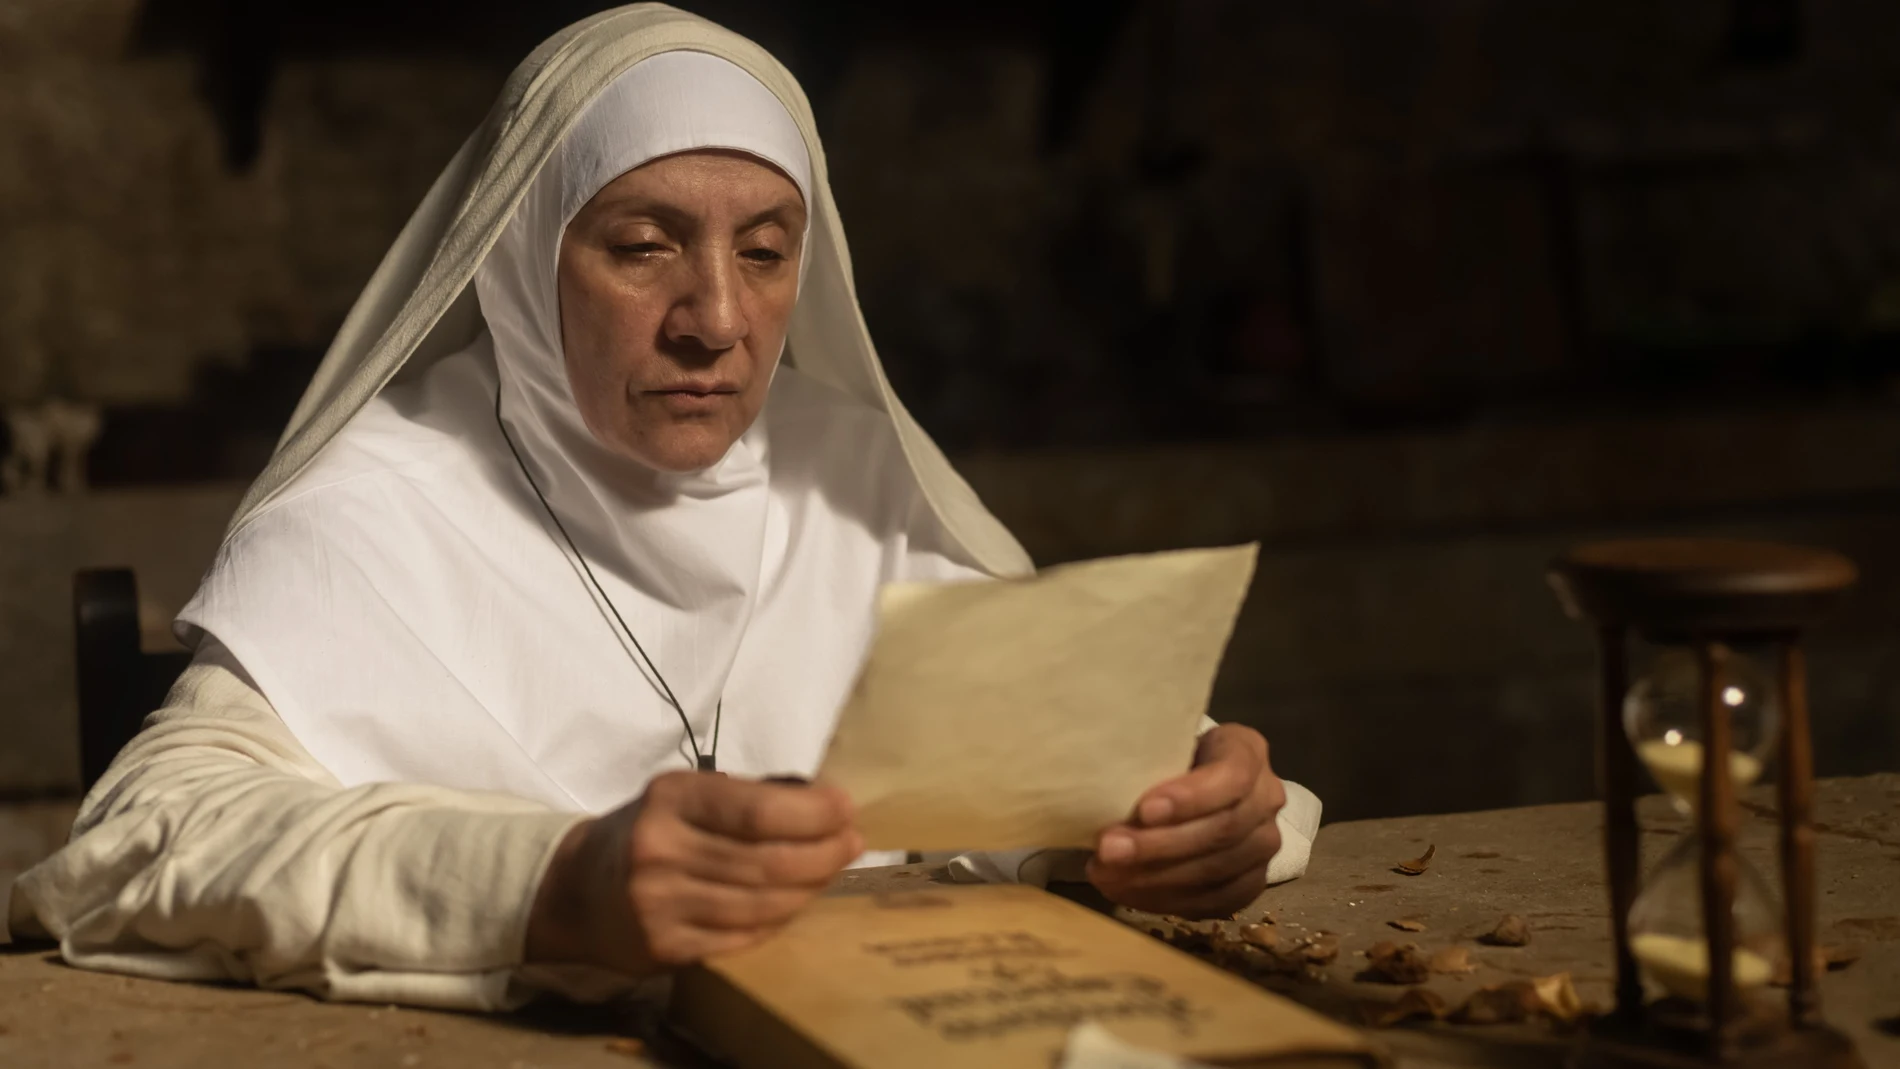 Blanca Portillo en "Teresa", la nueva película de Paula Ortiz sobre la vida de la santa